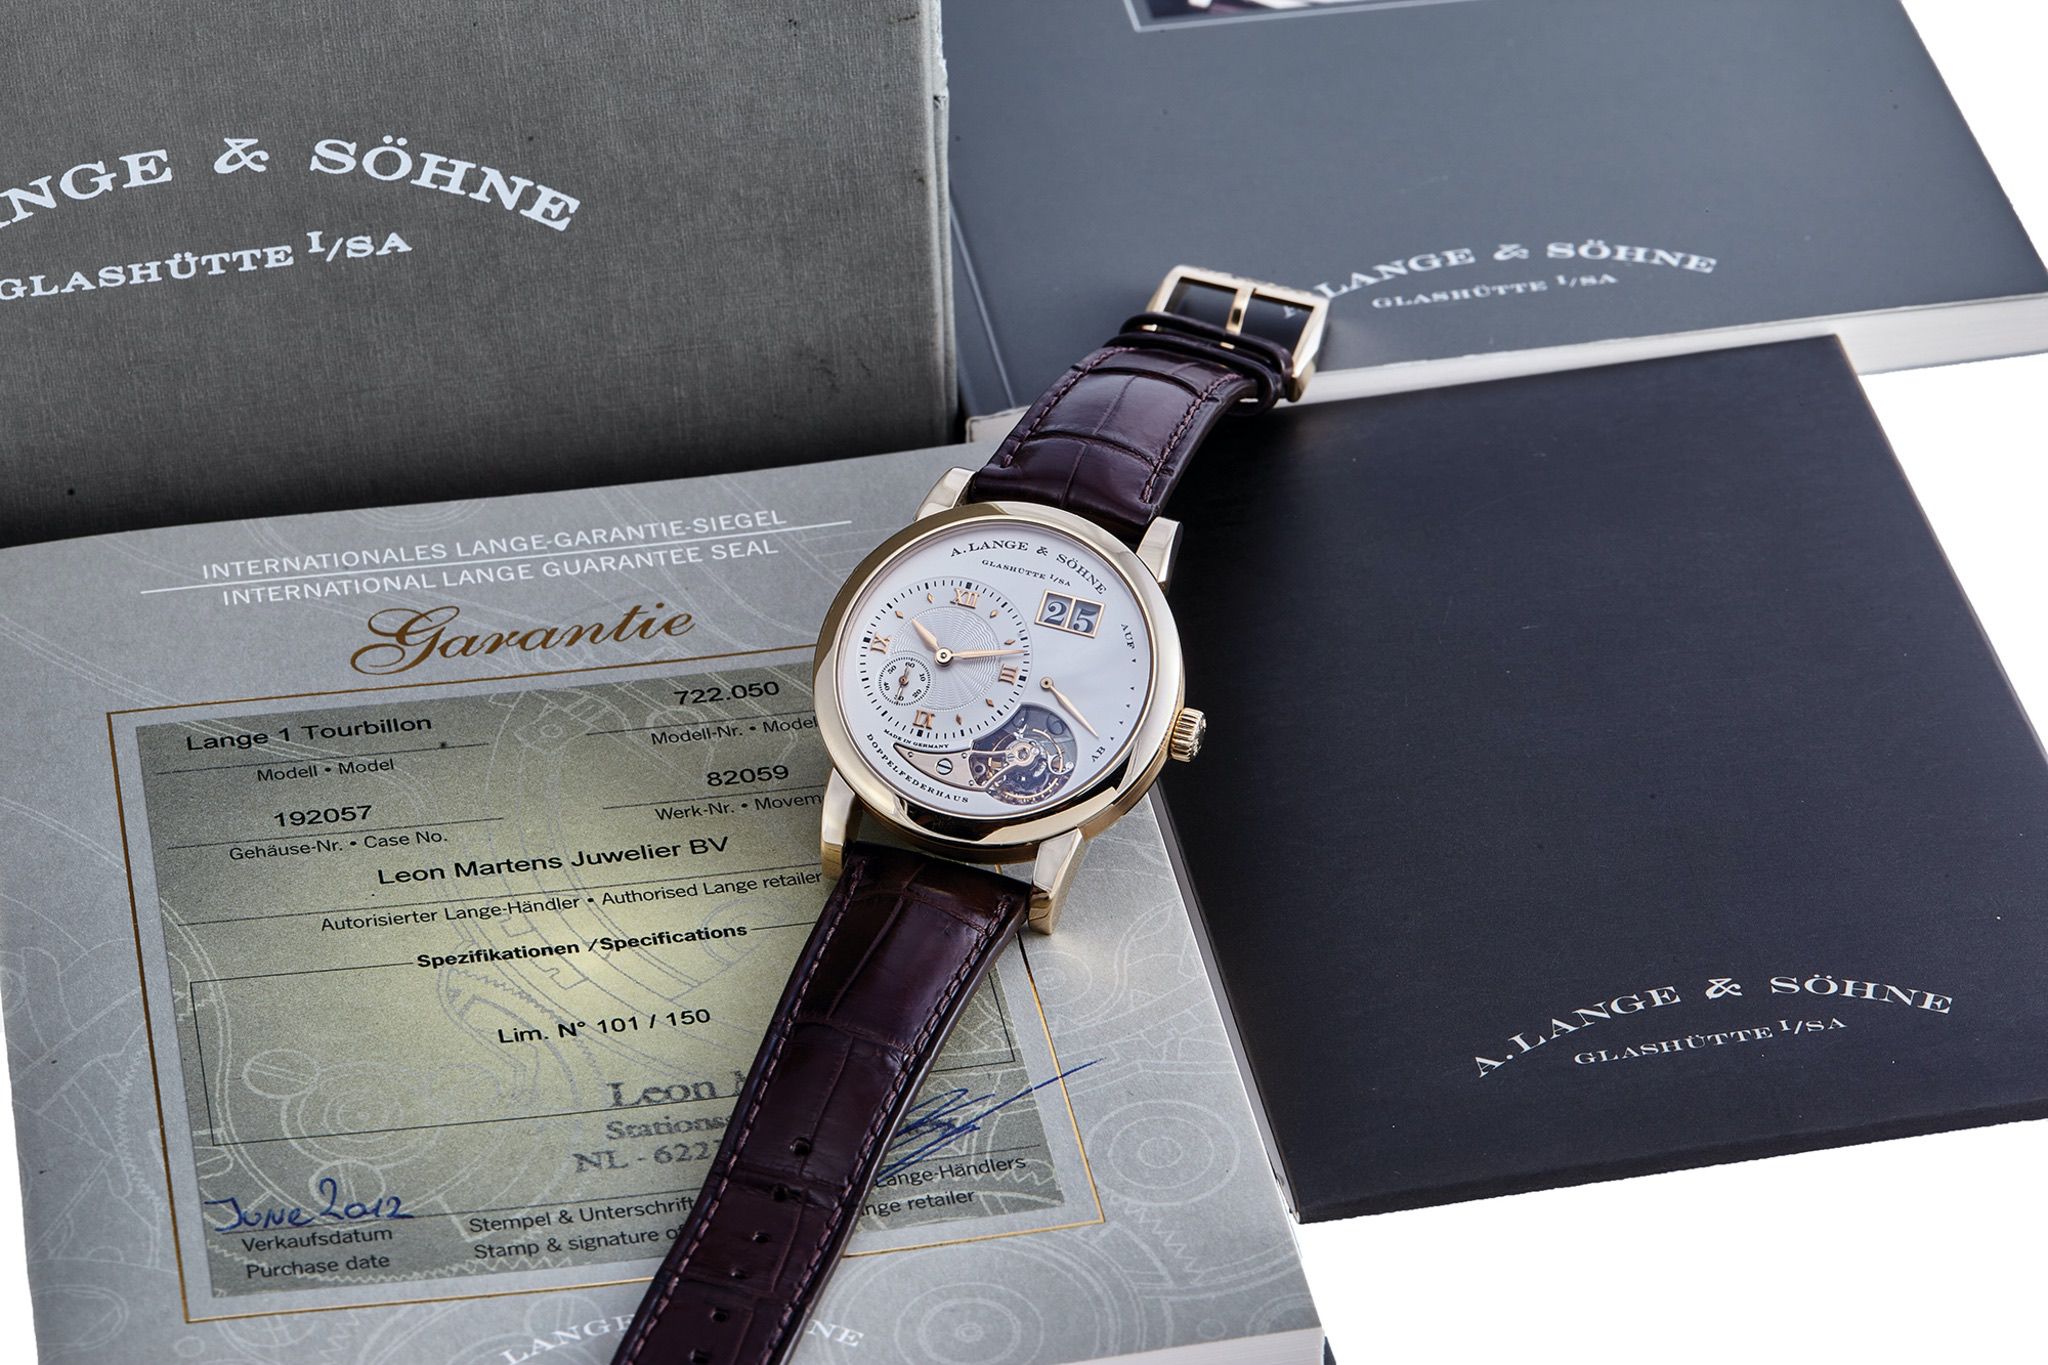 5 Mẫu đồng hồ tourbillon có giá chỉ từ 20.000 USD tại Antiquorum 5/12, có Breguet, Hublot, A. Lange & Sohne